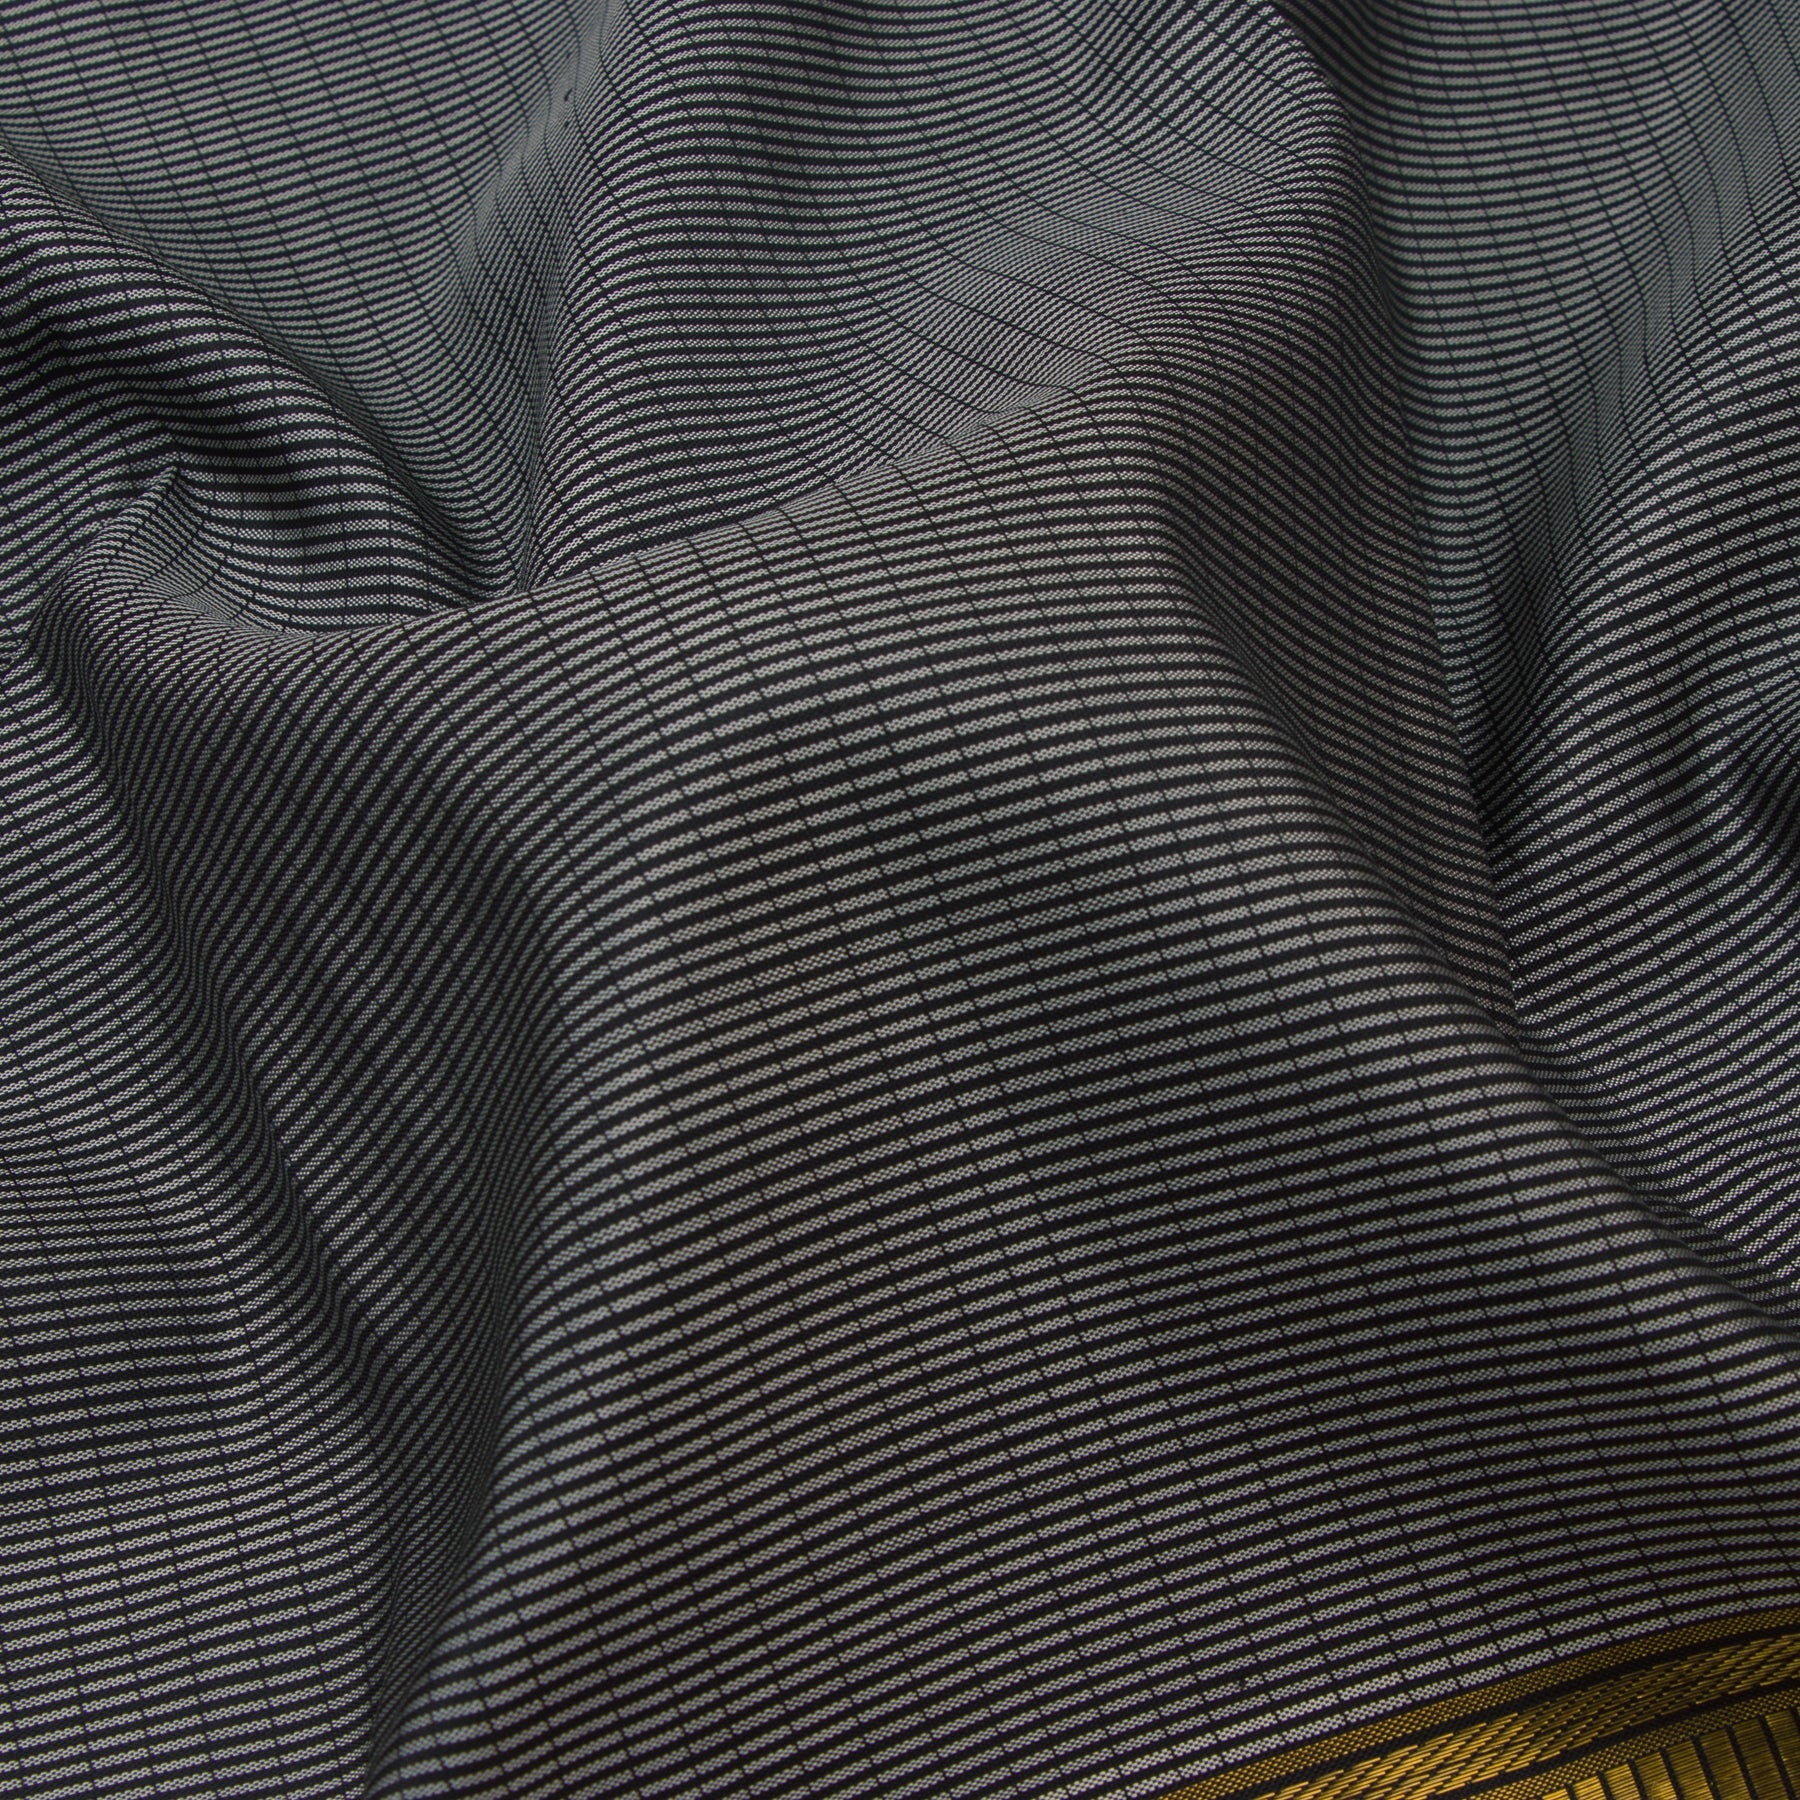 Kanakavalli Kanjivaram Silk Sari 23-110-HS001-03055 - Fabric View